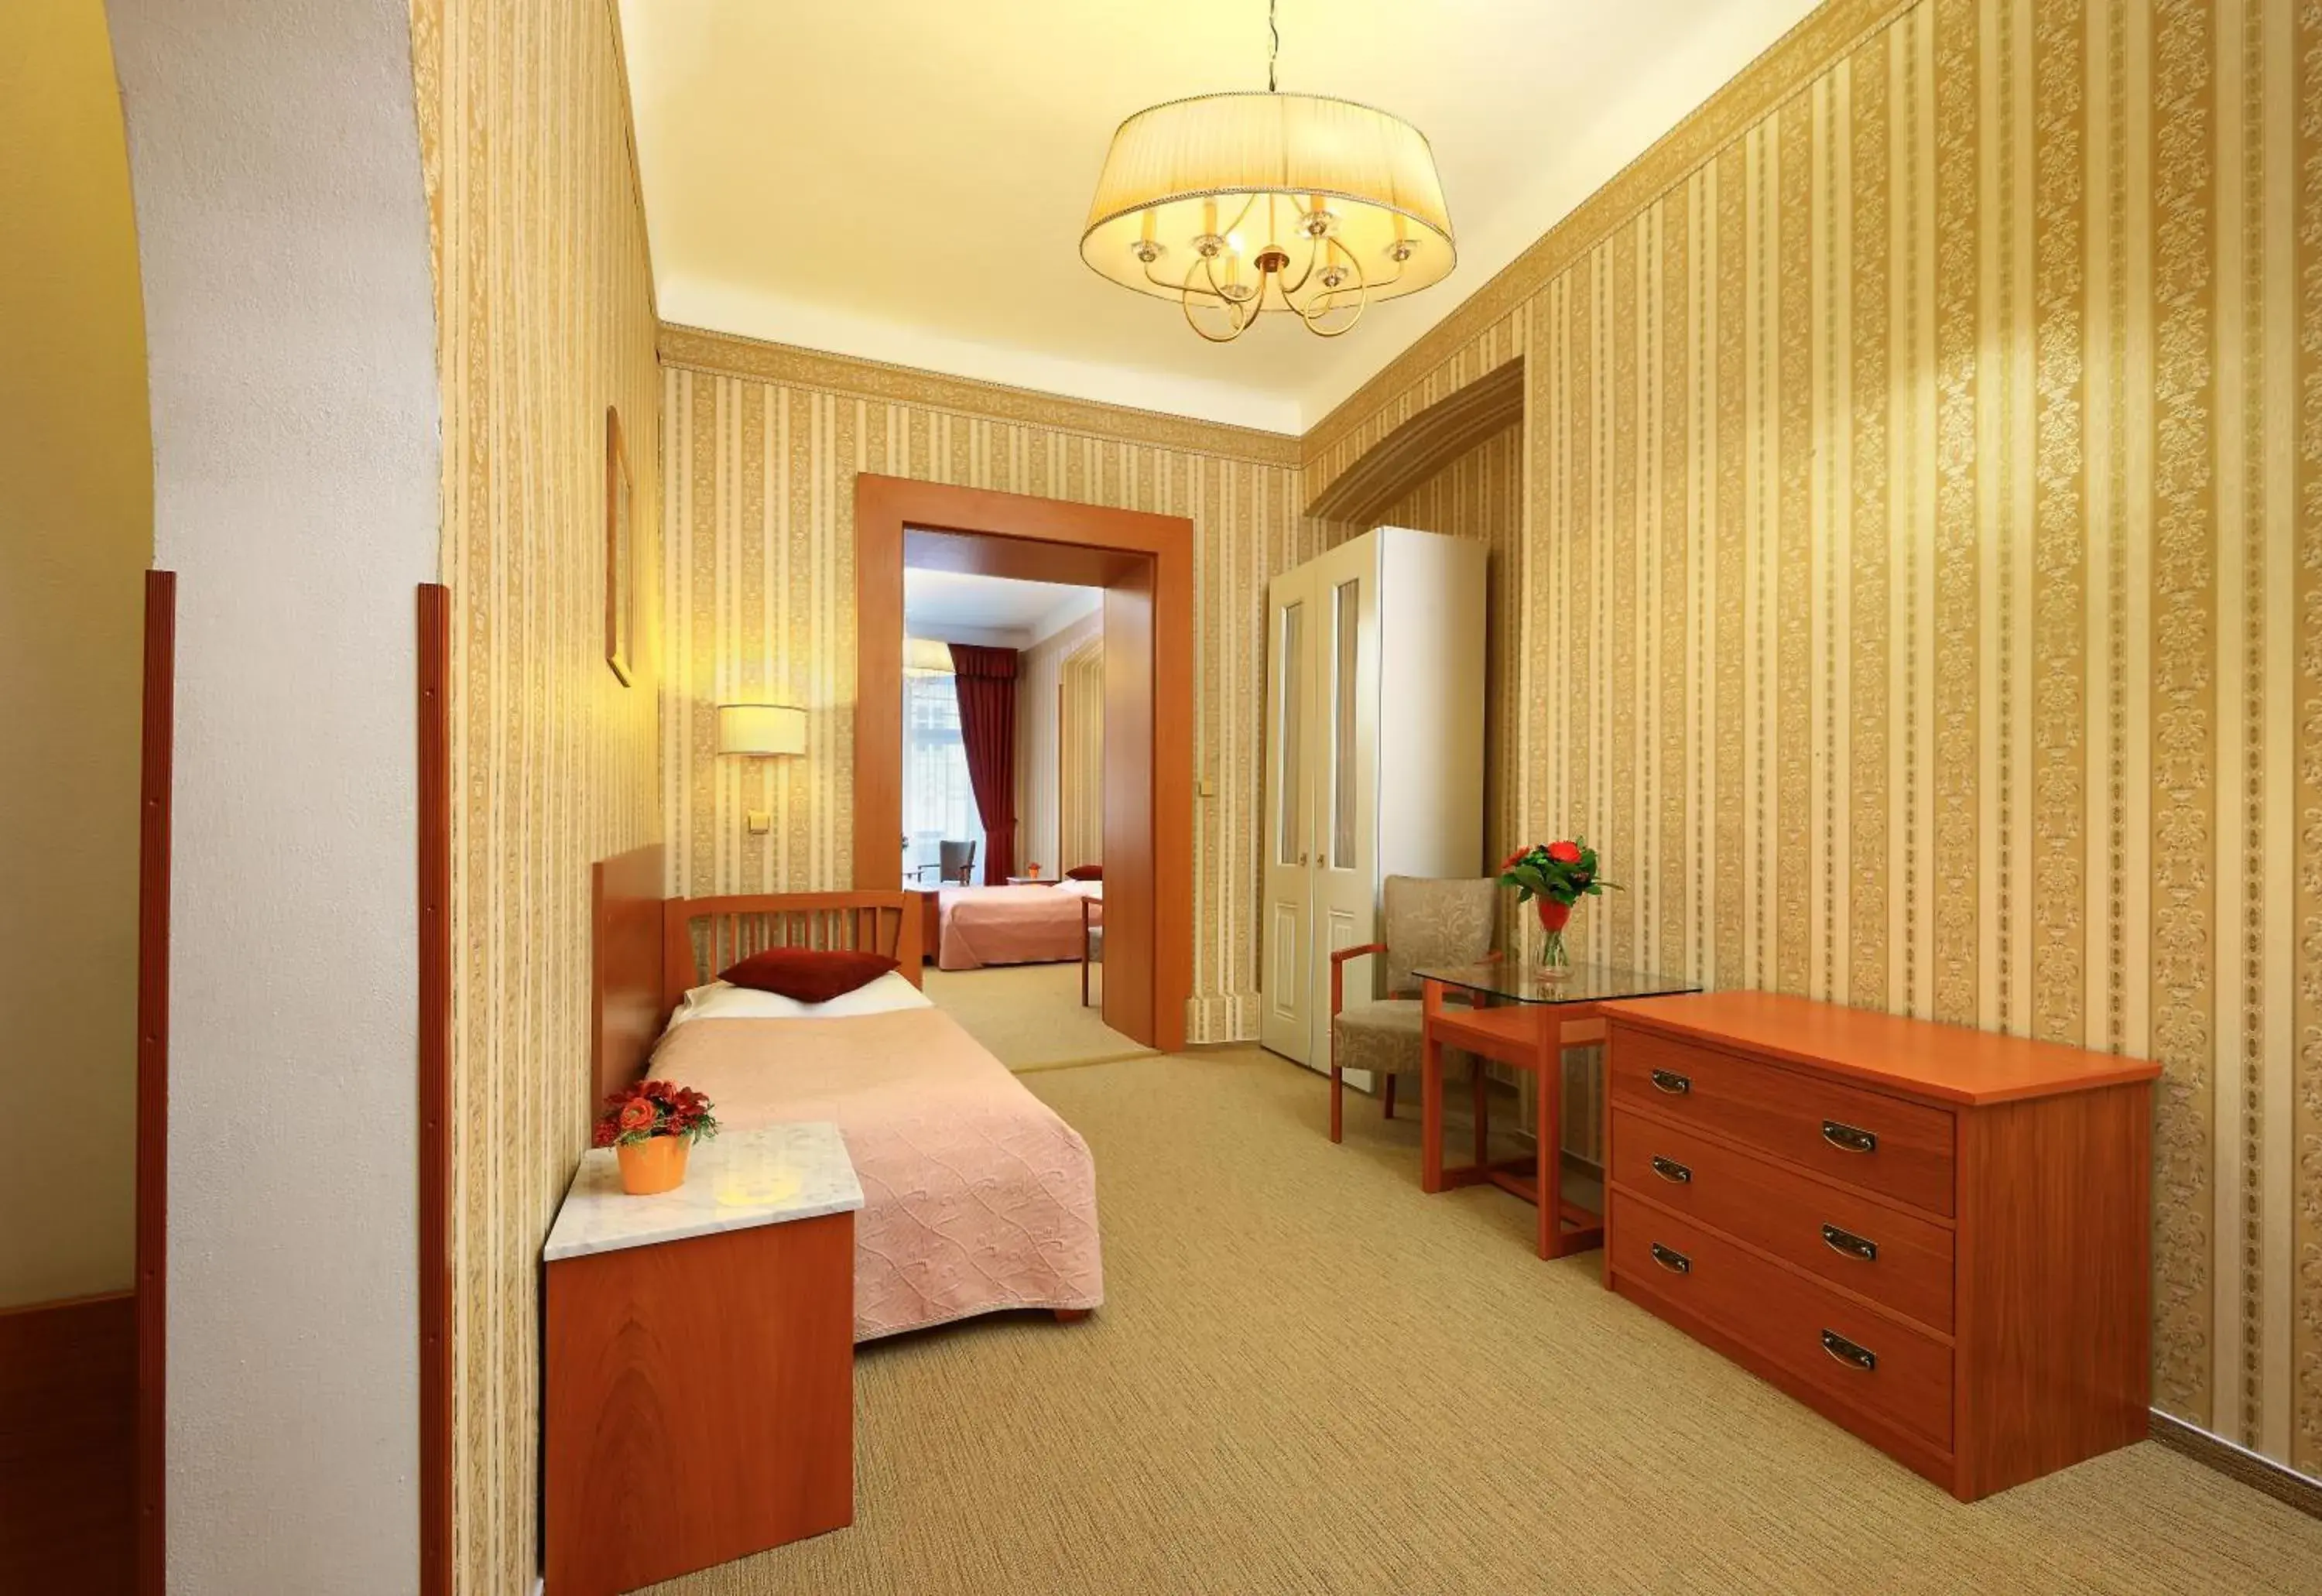 Bedroom in Hotel Salvator